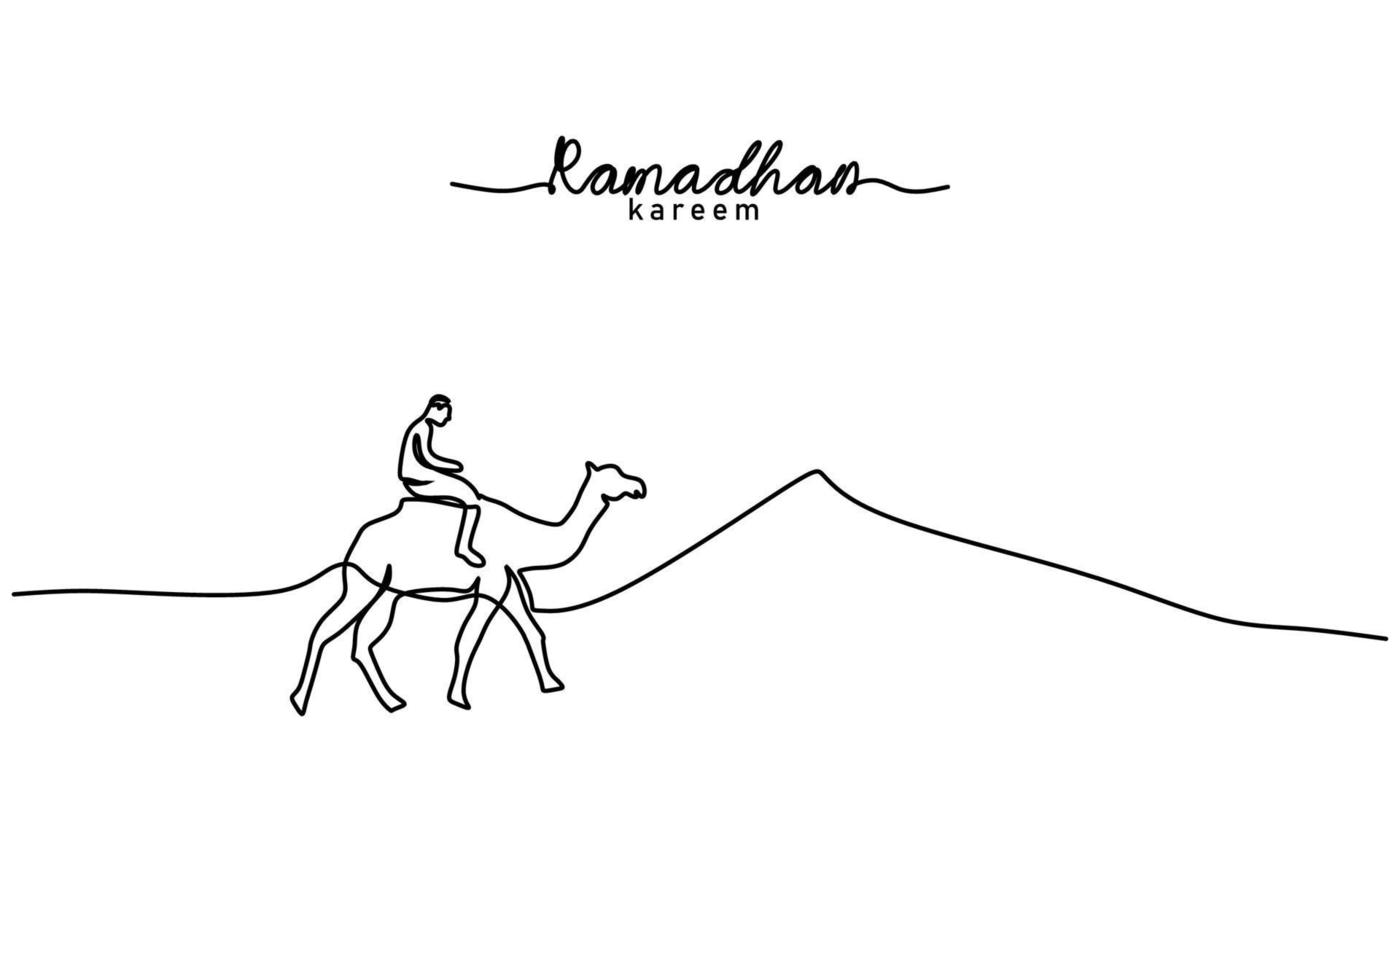 enkele regel van ramadan kareem woord met man rijden kameel op woestijn vector